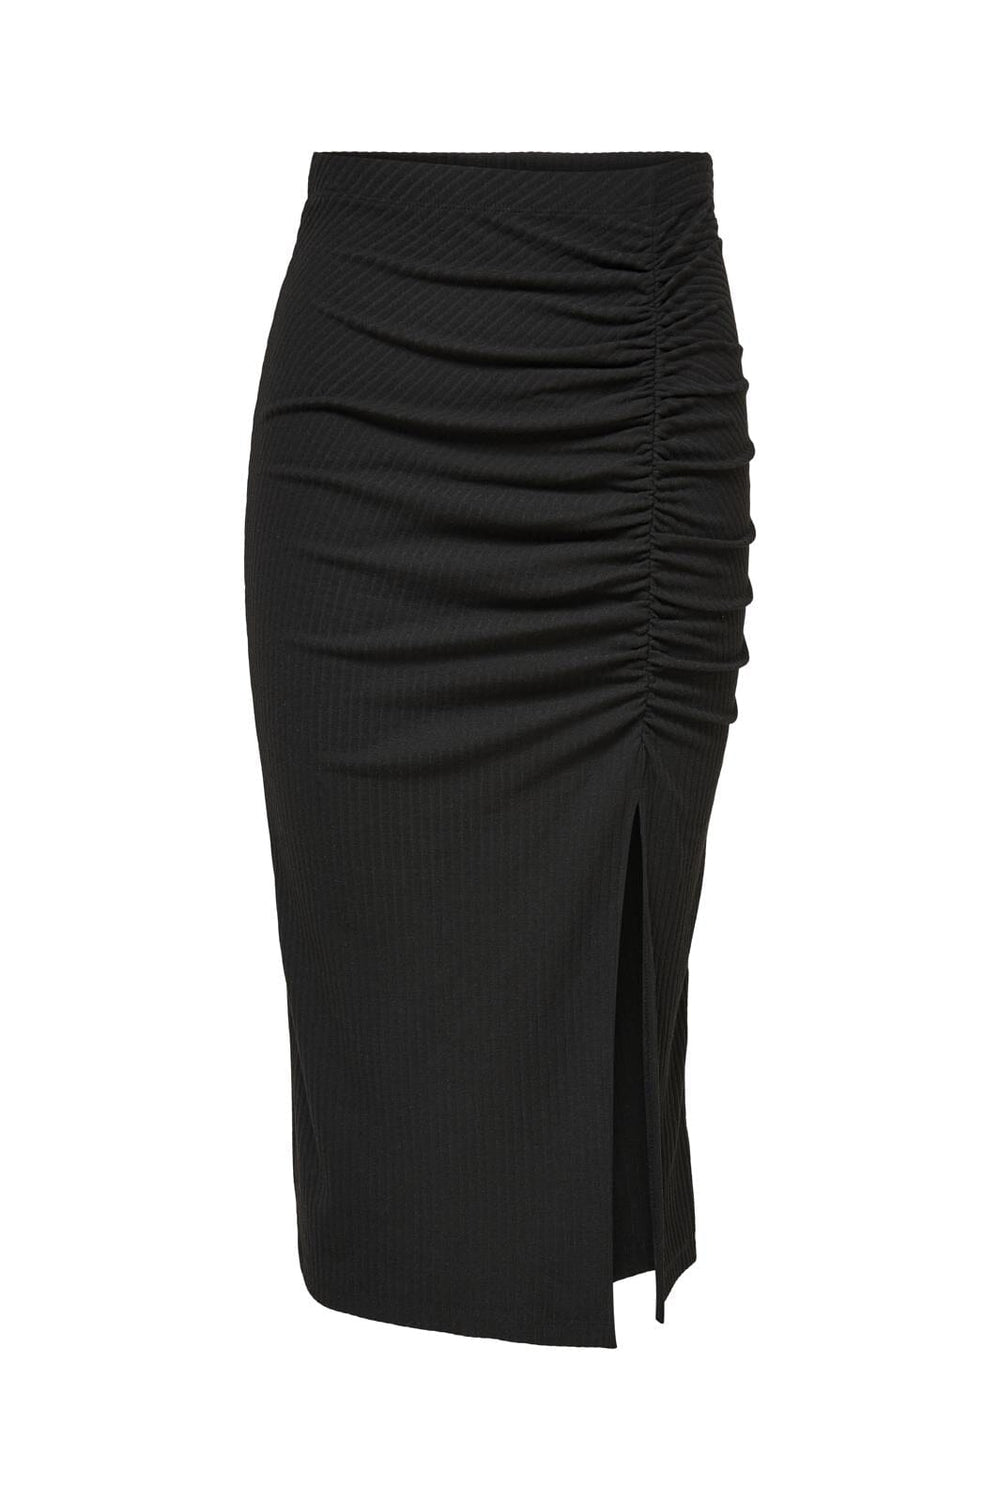 Only - Onlemma Ruching Slit Skirt - 3585300 Black